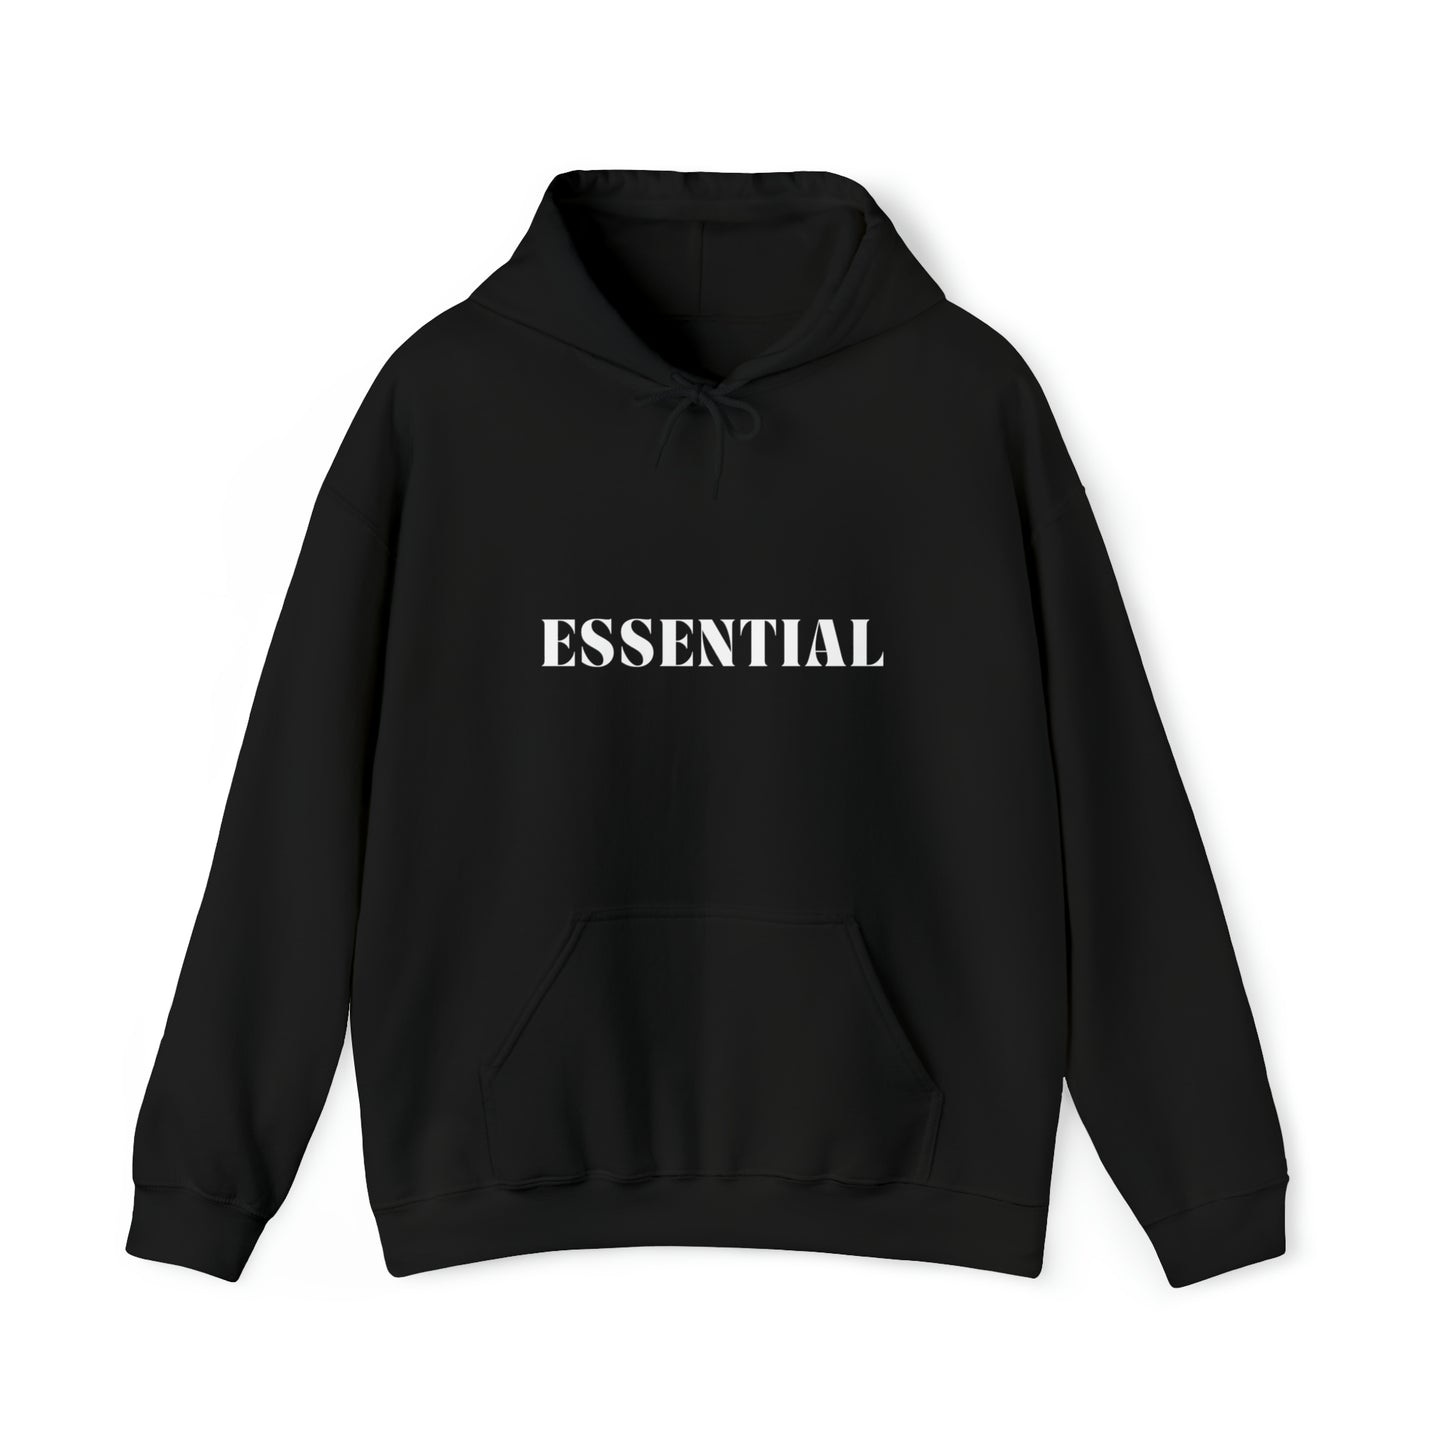 S Black Essential Hoodie from HoodySZN.com